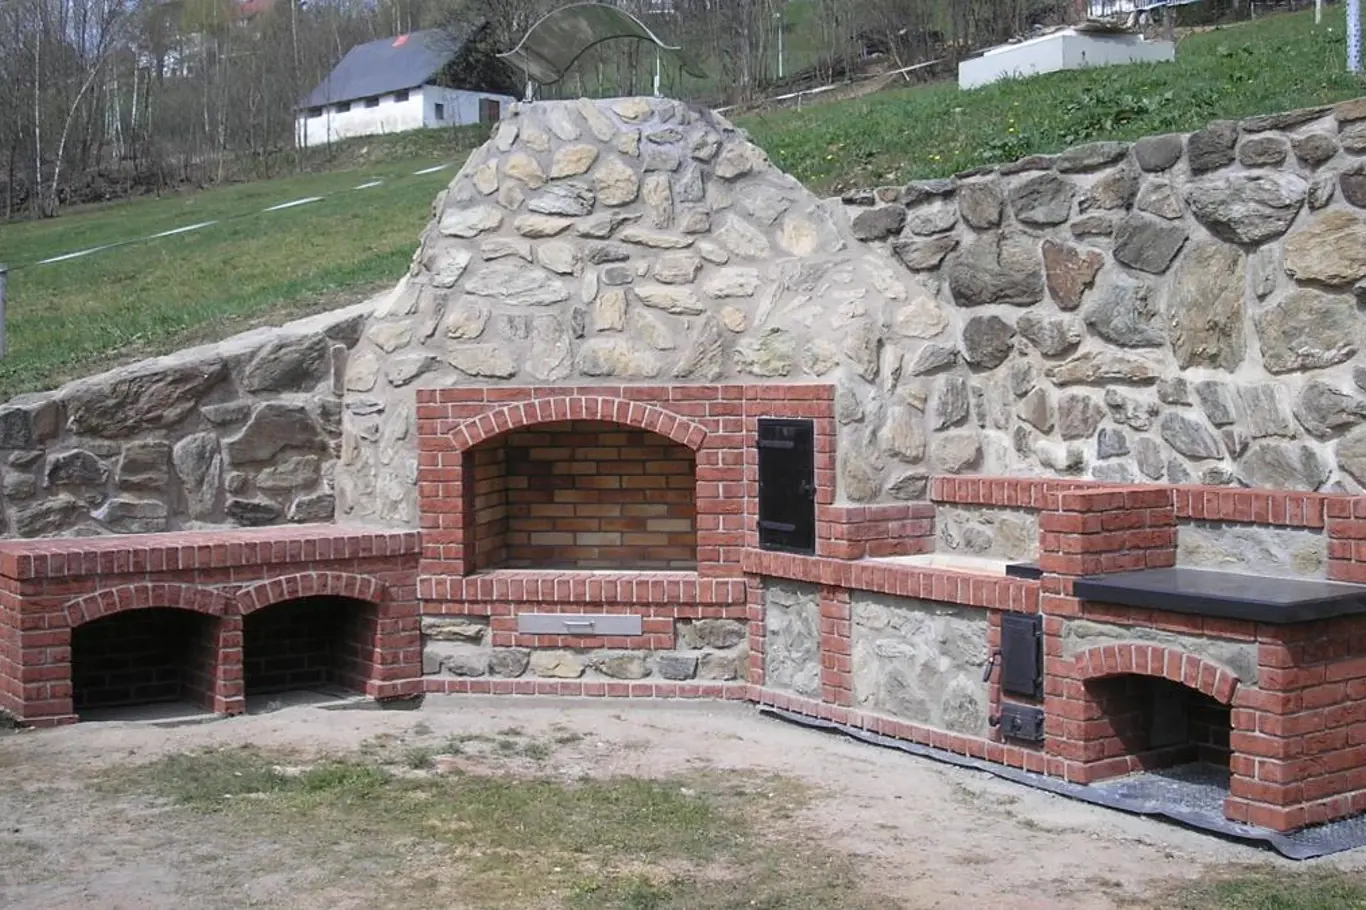 Velkorysá rustikální venkovní kuchyně s otevřeným ohništěm skrývá výkonné moderní topidlo a dostatek místa na uložení dřeva i přípravu pokrmů. 